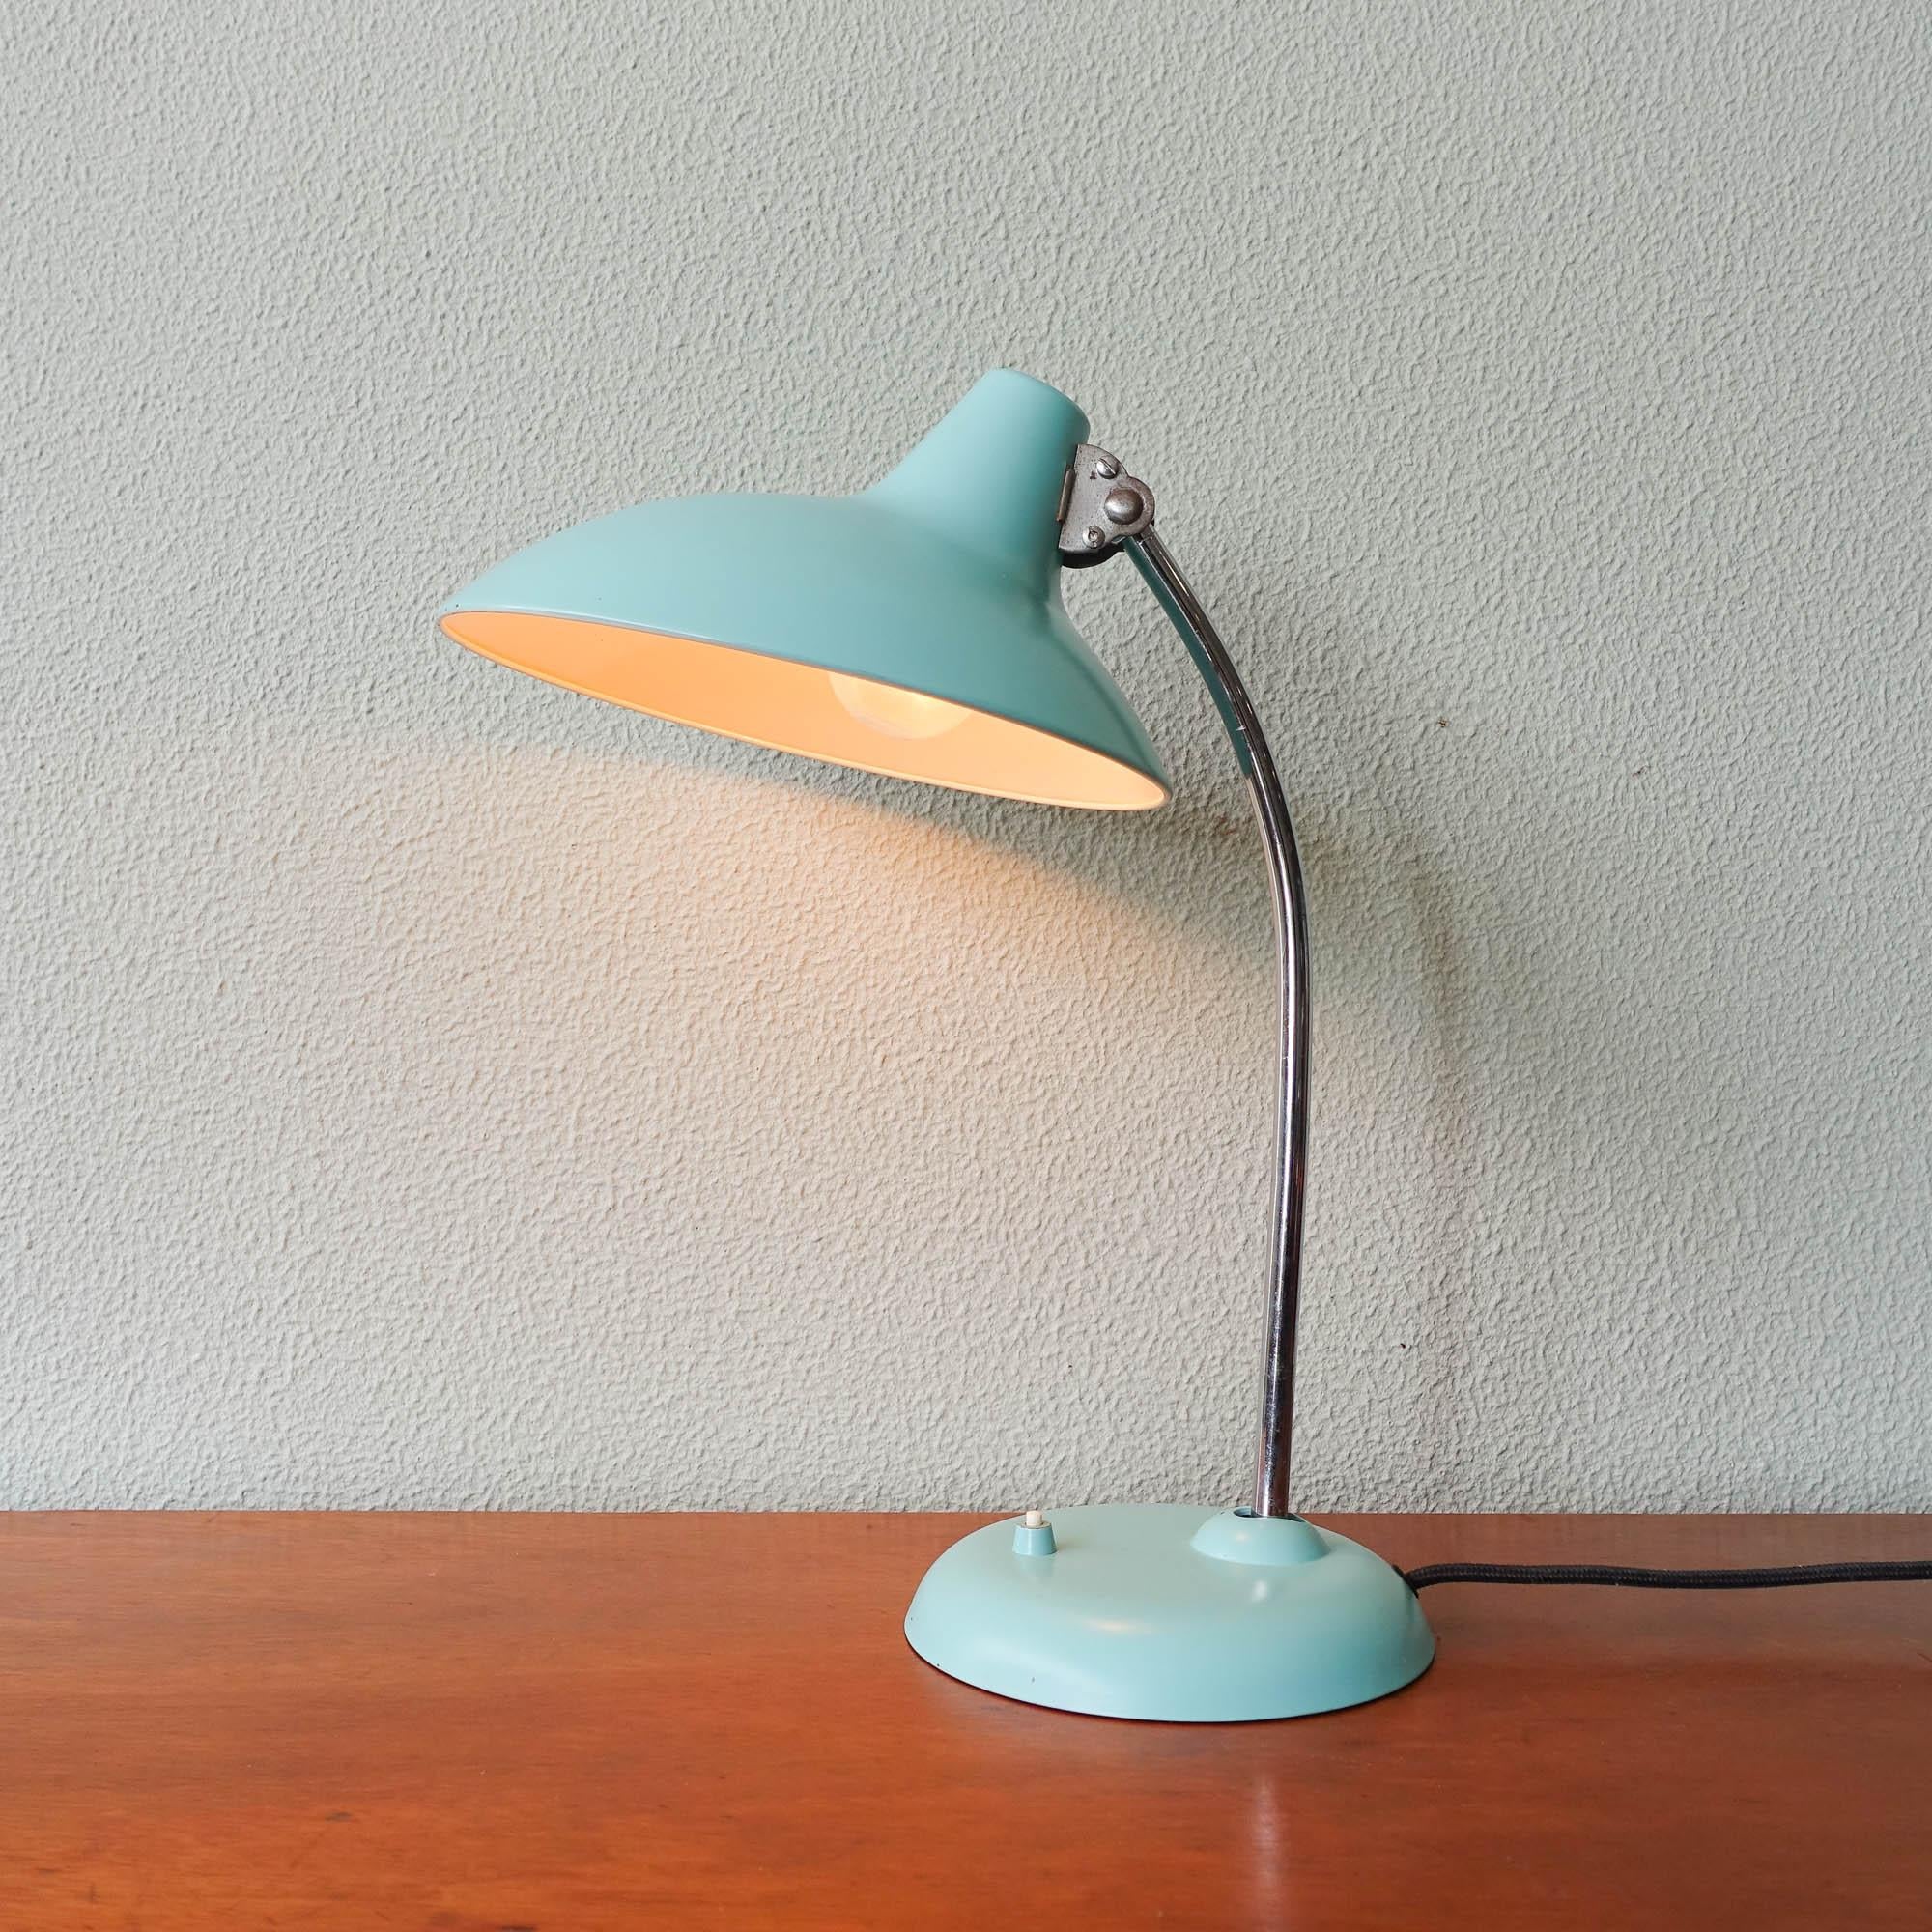 Cette lampe de table modèle 6786 a été conçue entre 1920 et 1940 par Christian Dell, et fabriquée par Kaiser Idell. Il comporte un abat-jour réglable en métal laqué bleu clair, avec une tige chromée réglable. Cette lampe est dans un bon état vintage.